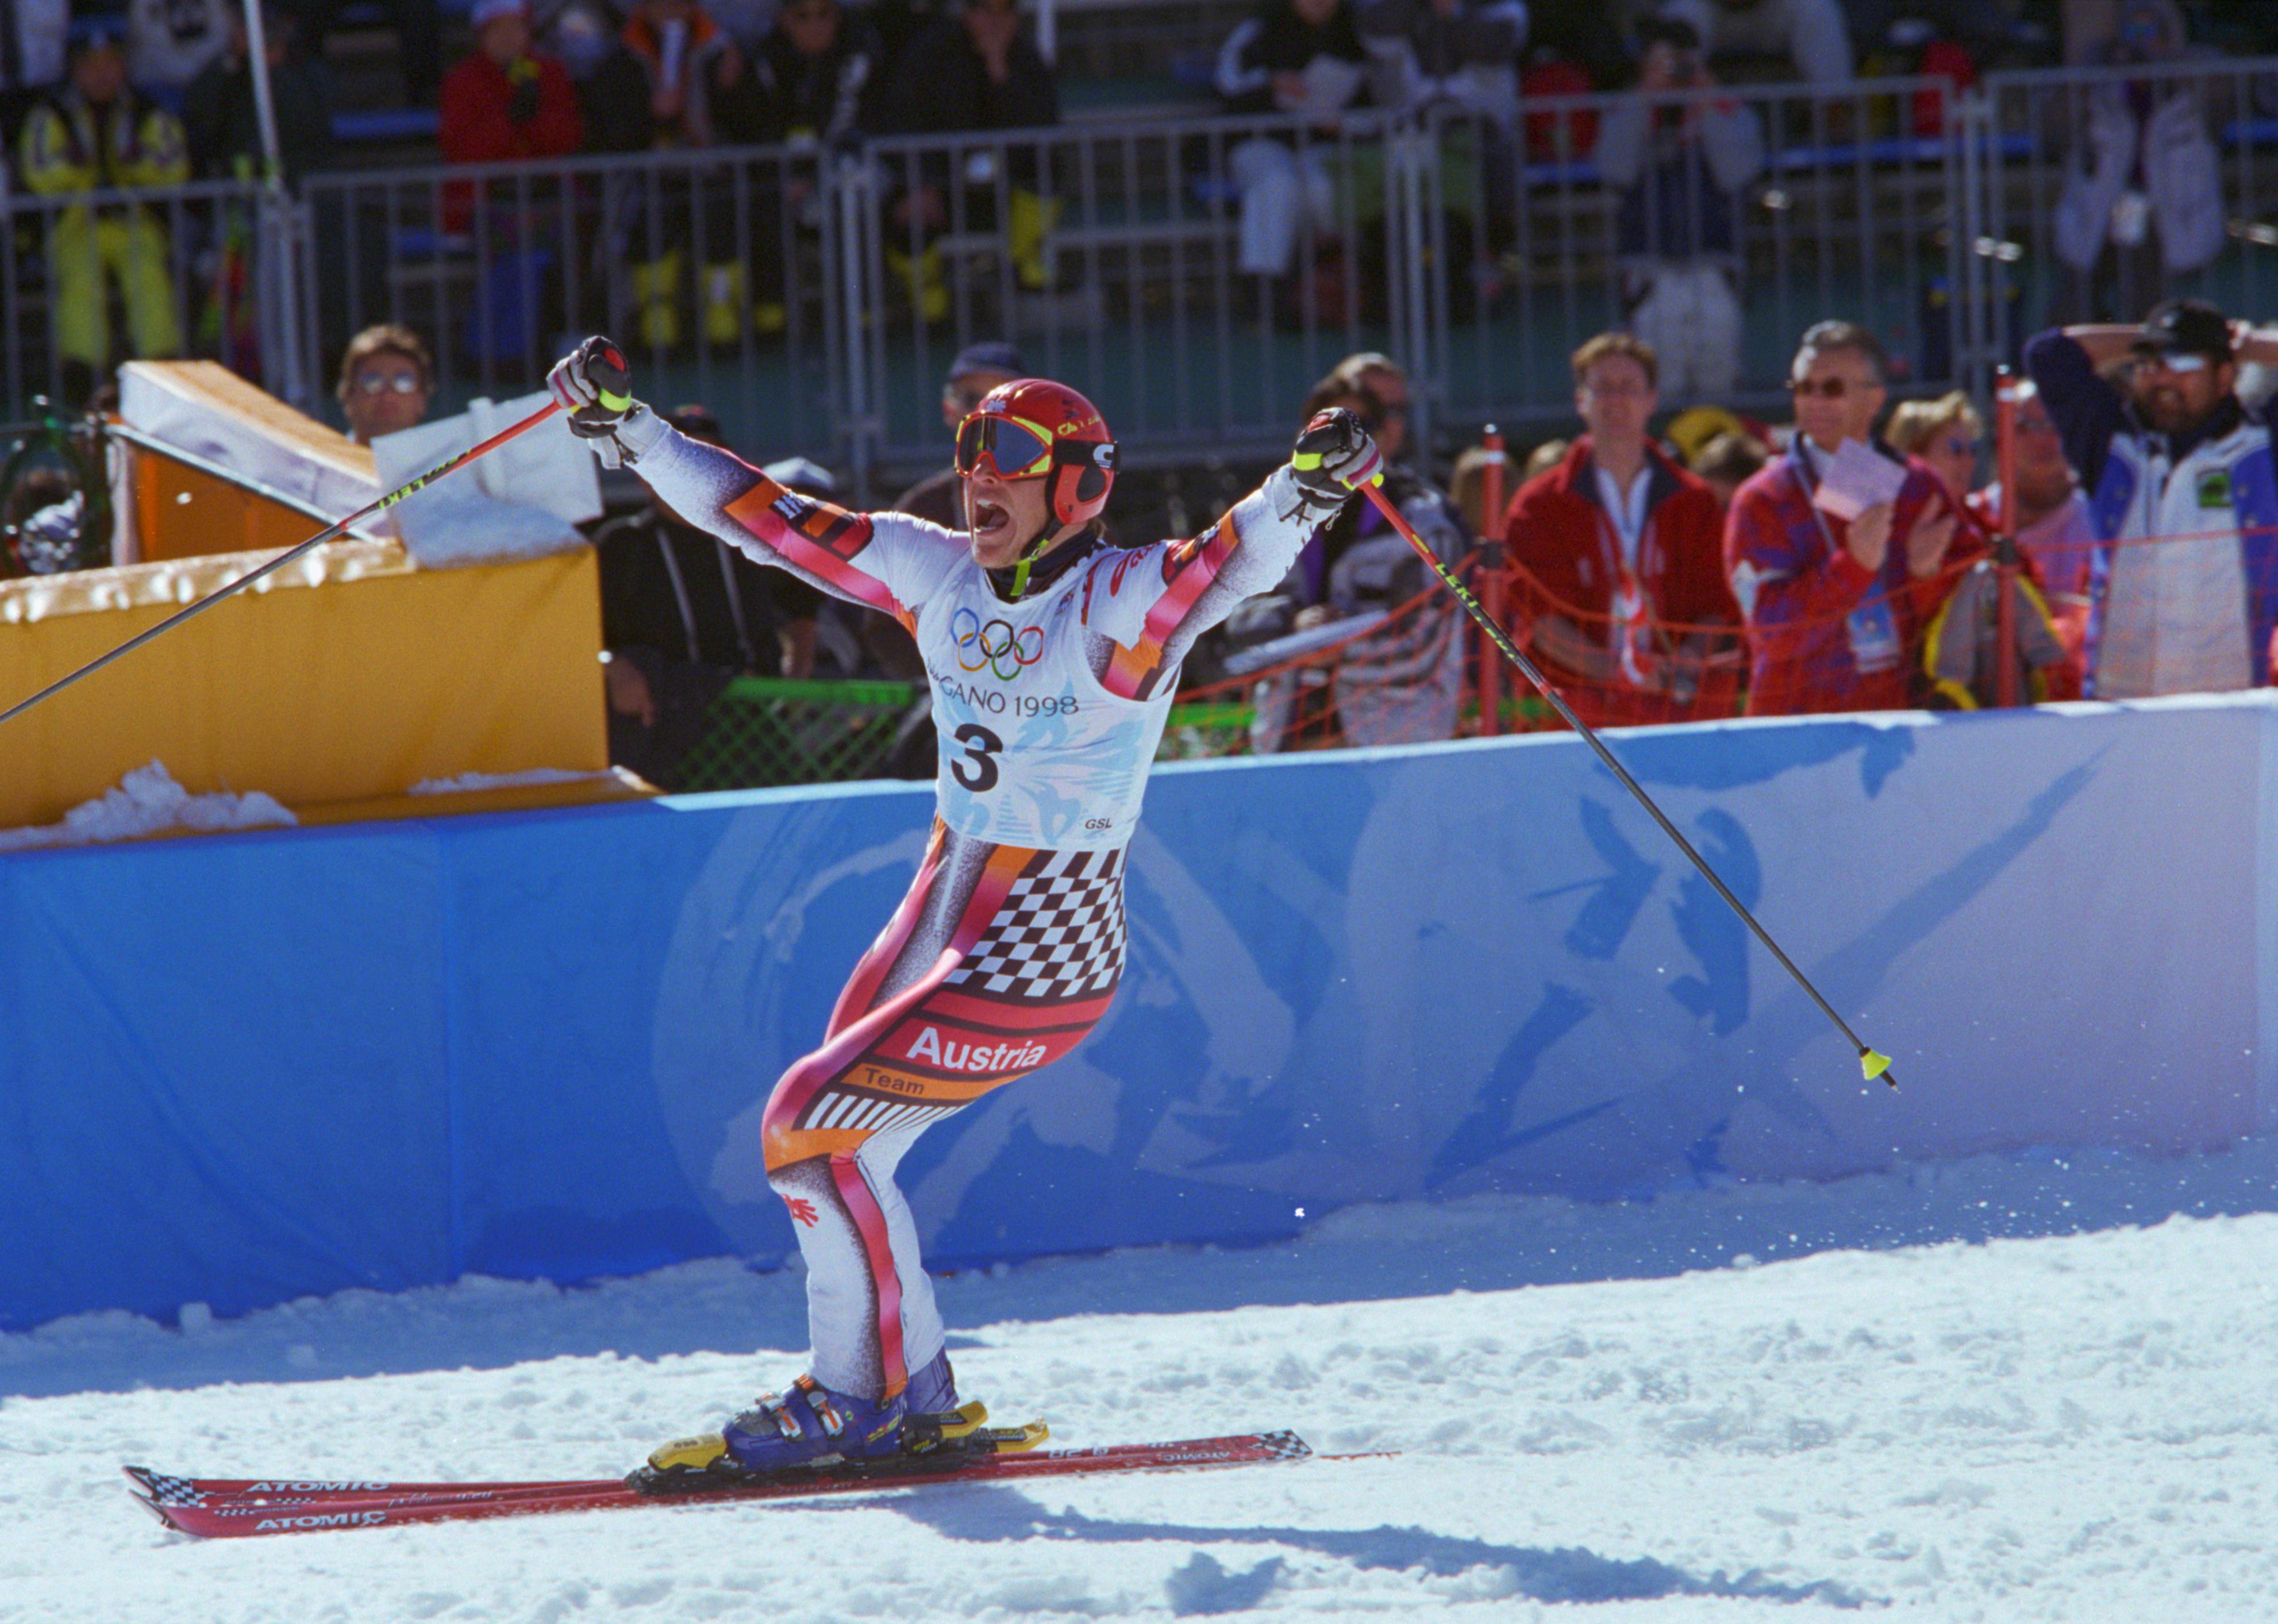 Hermann Maier celebrating at the bottom of the ski run